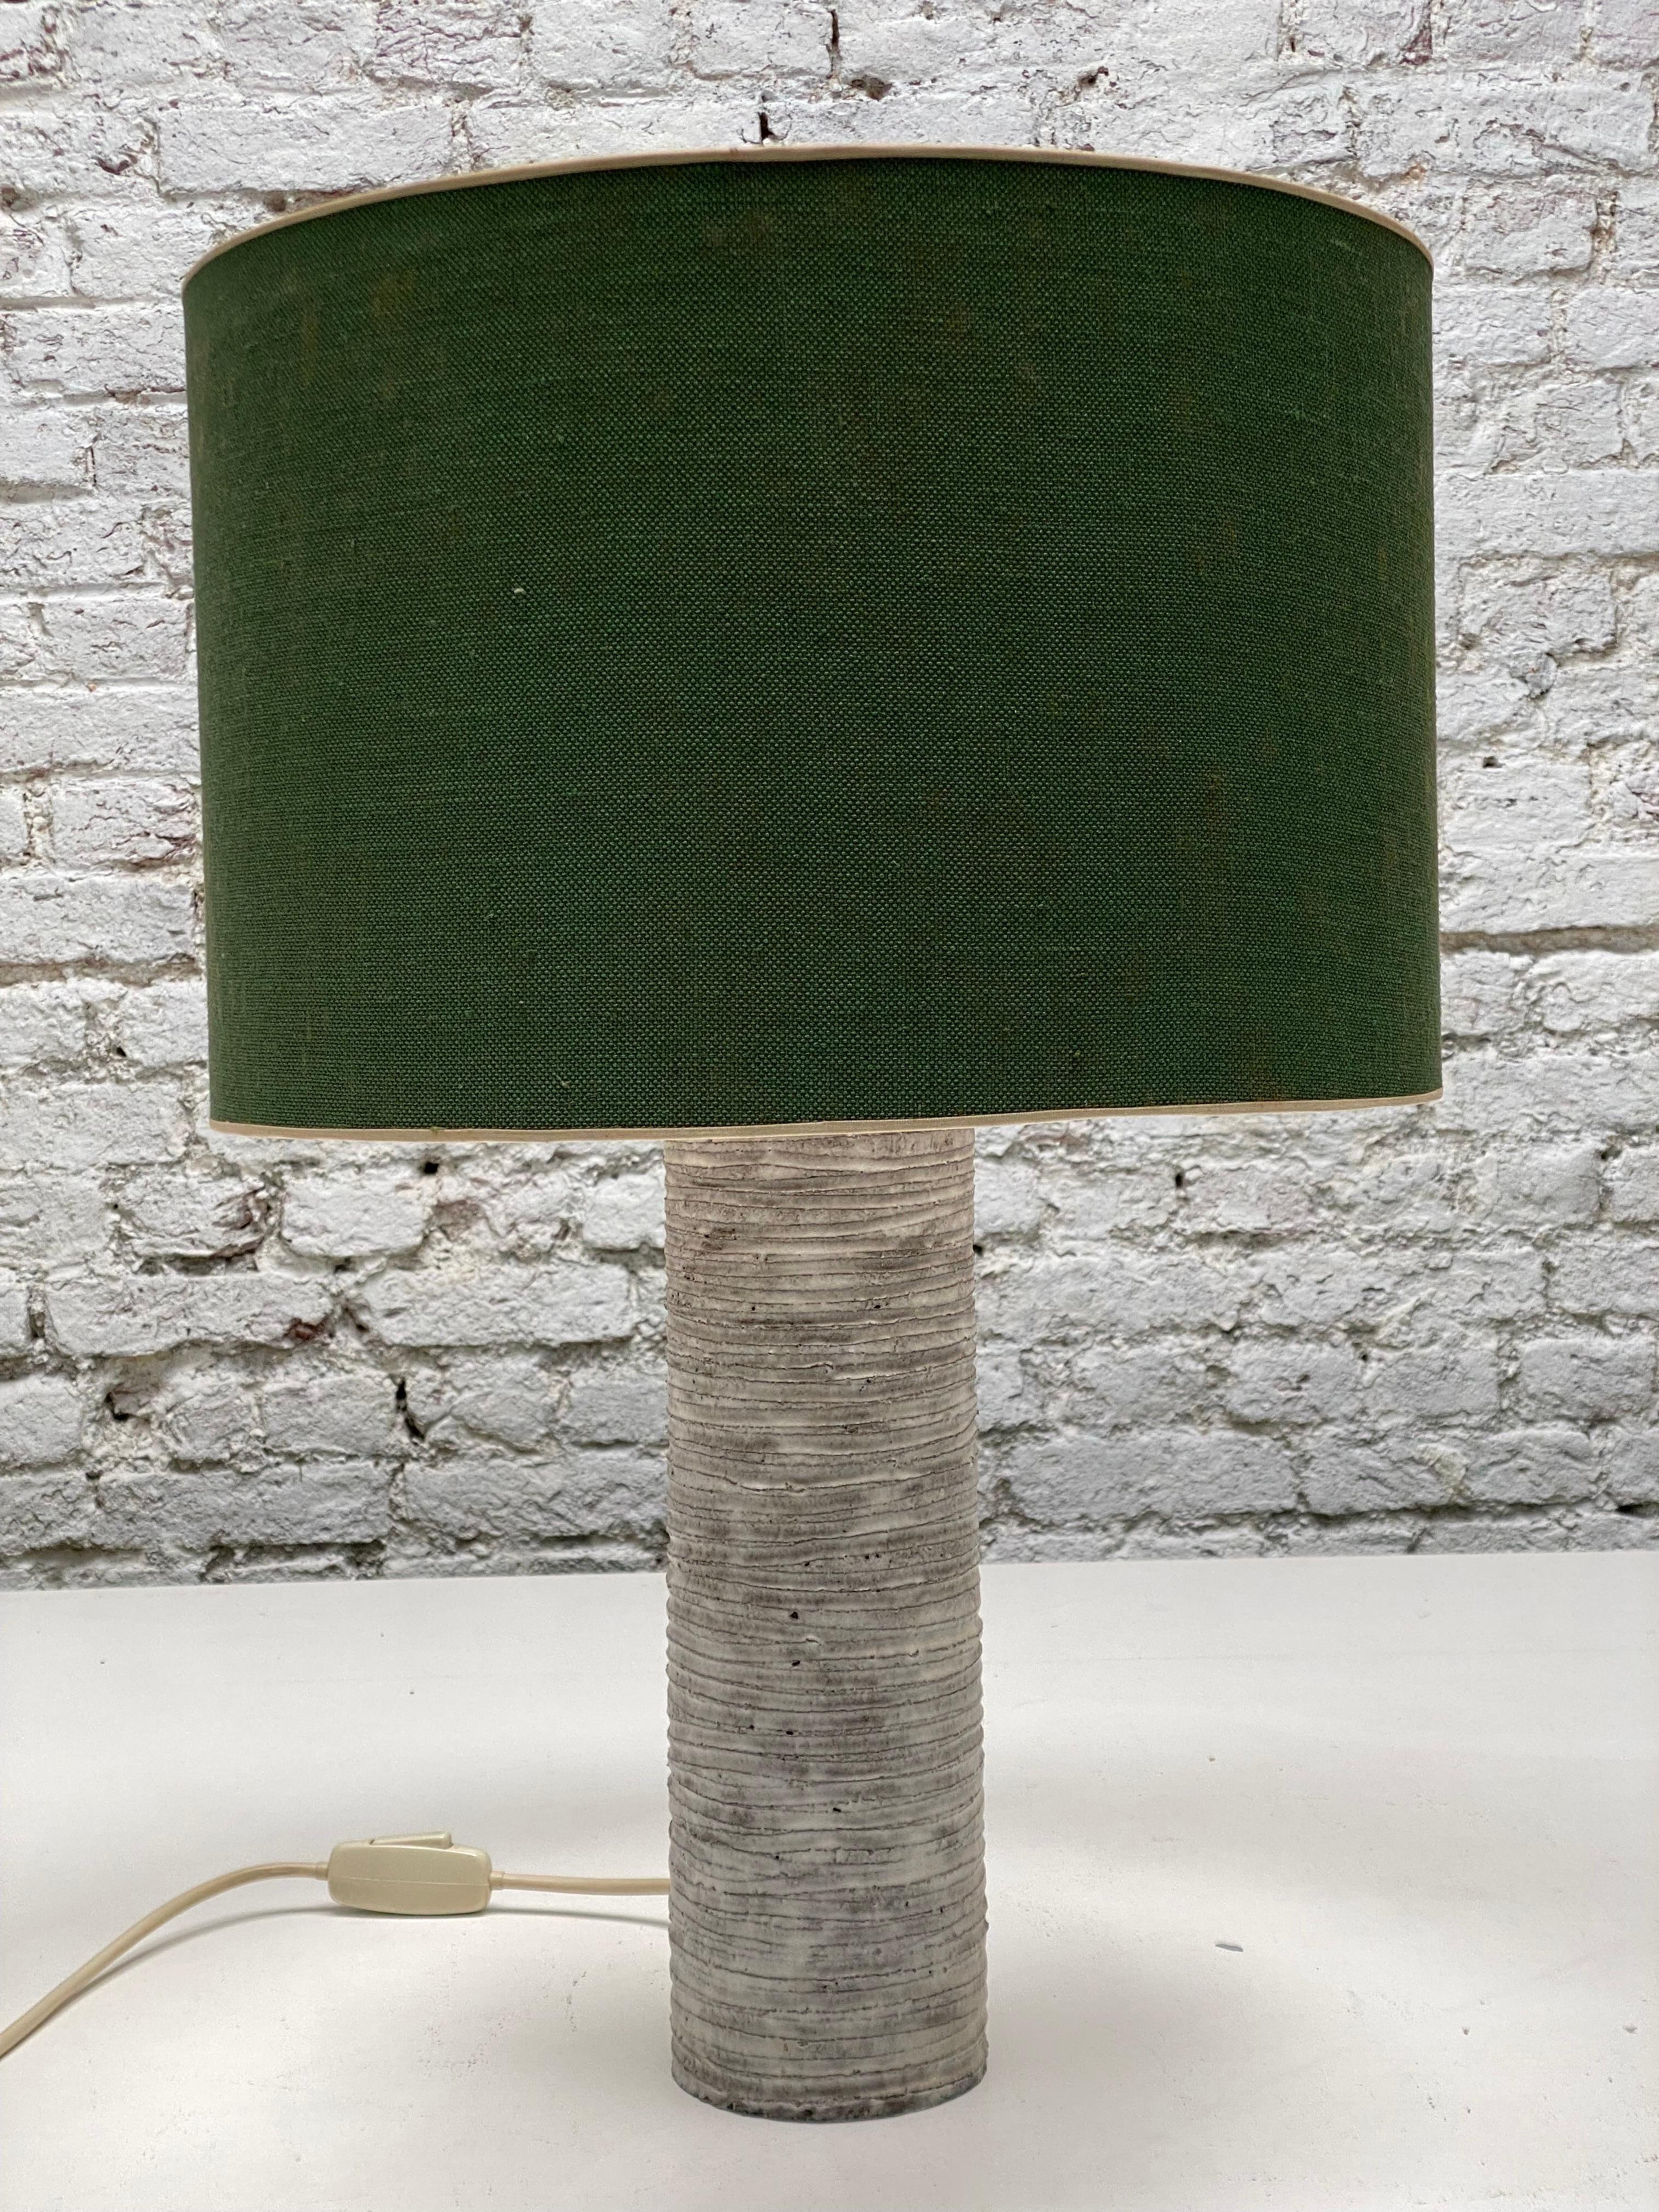 Tischlampe brutalistischen Keramik in grauen Spiraltönen in Dänemark original grünen Schatten gemacht. Abmessungen Schirm 40-27 cm, Vase 53-10 cm. Höhe 59 cm.